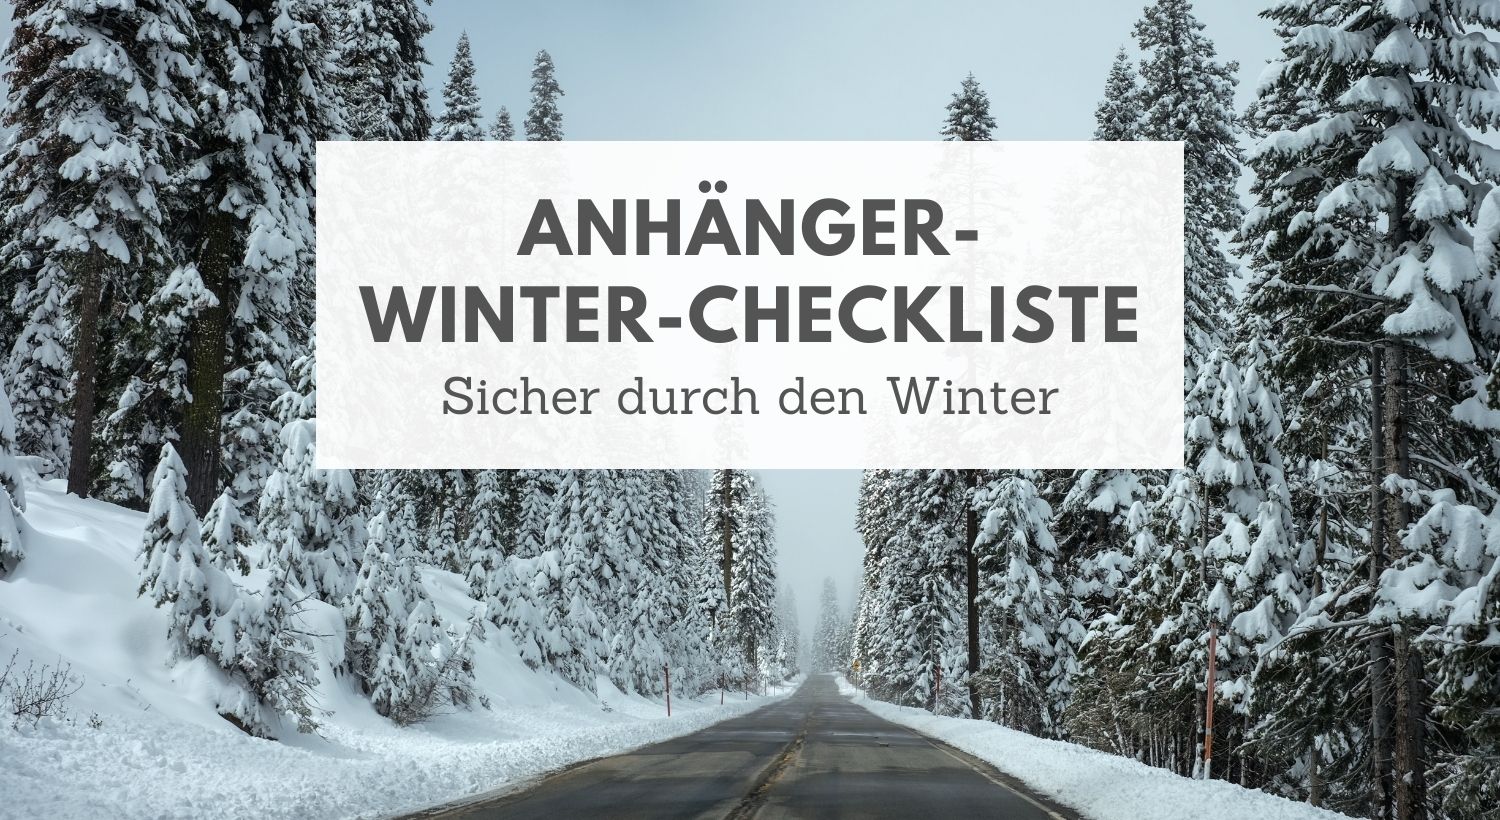 Sicher durch den Winter: Anhänger-Winter-Checkliste - Lavendelblog